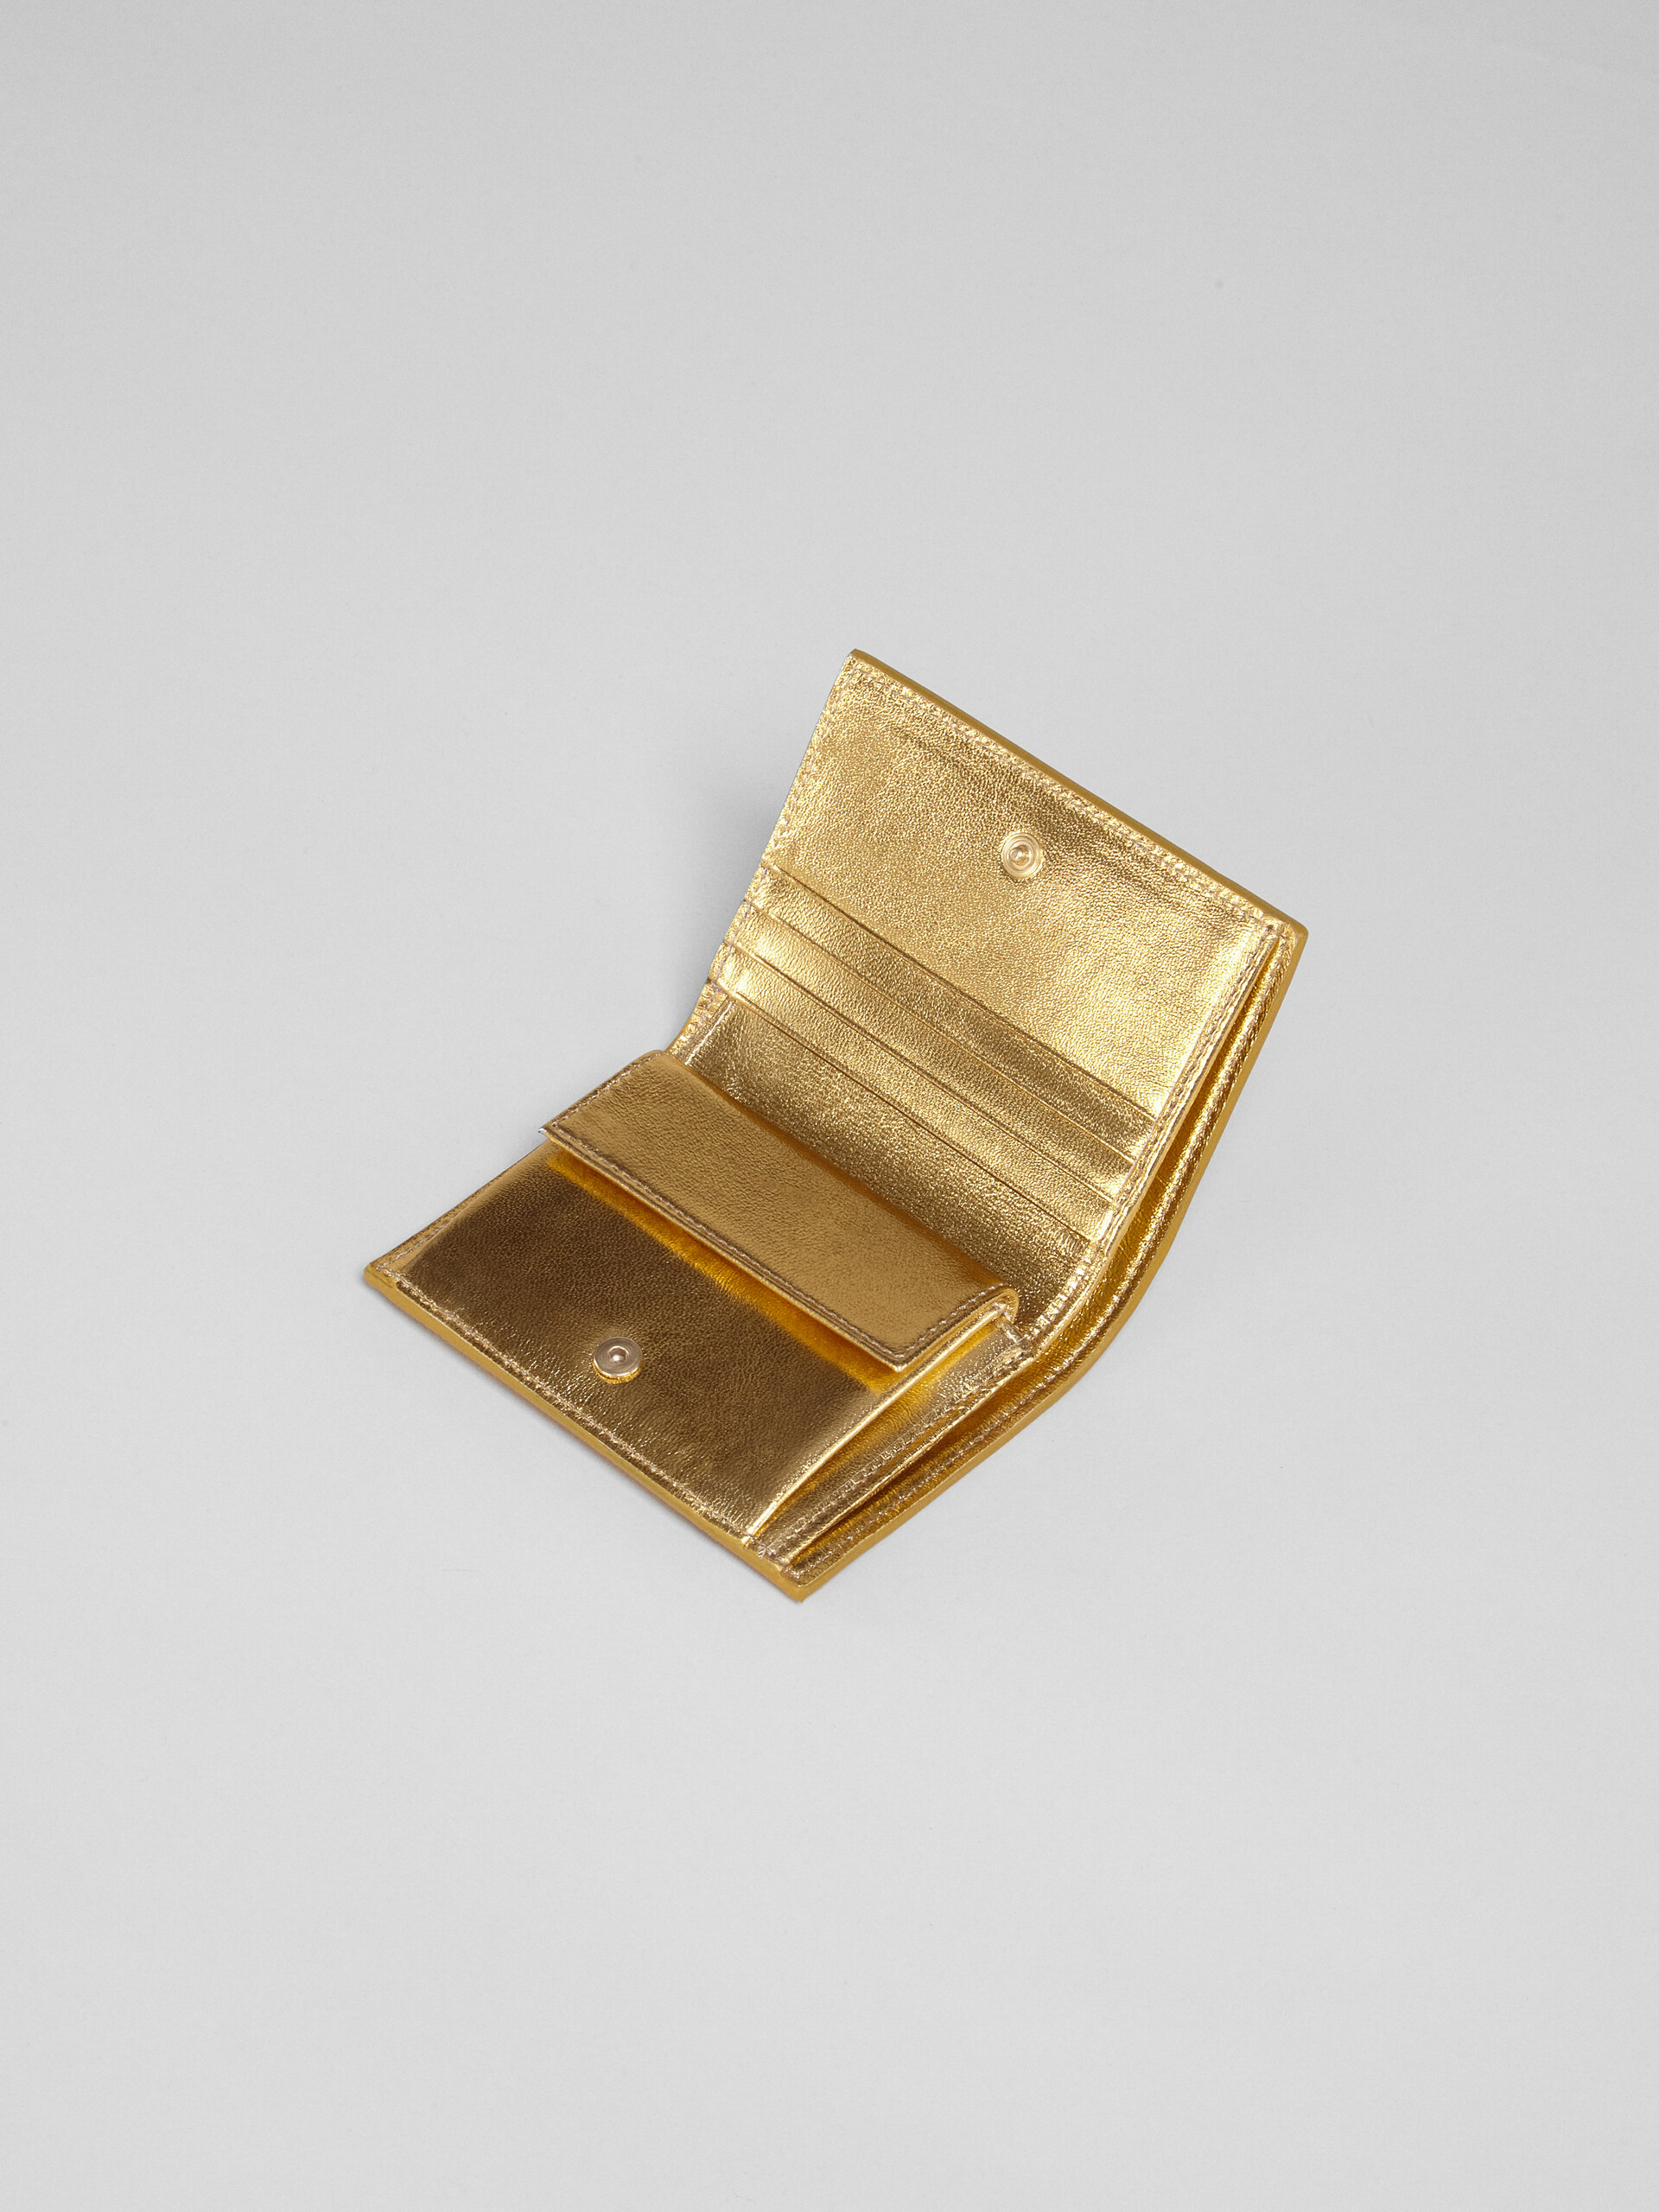 ゴールドメタリック調 ナッパレザー二つ折りウォレット - 財布 - Image 3